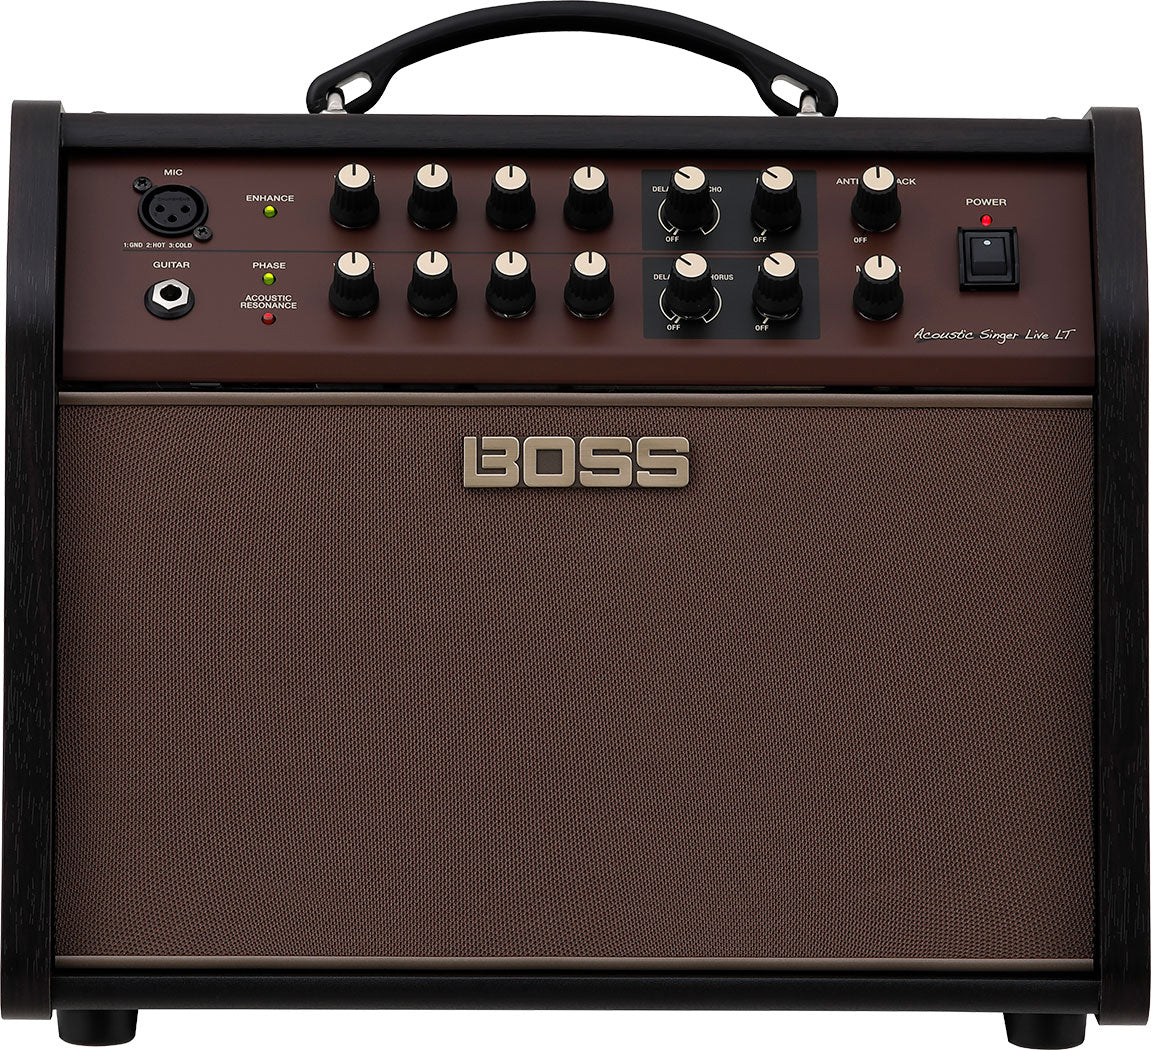 Boss Acoustic Singer Live LT 60W 6.5" Acoustic Guitar Amplifier